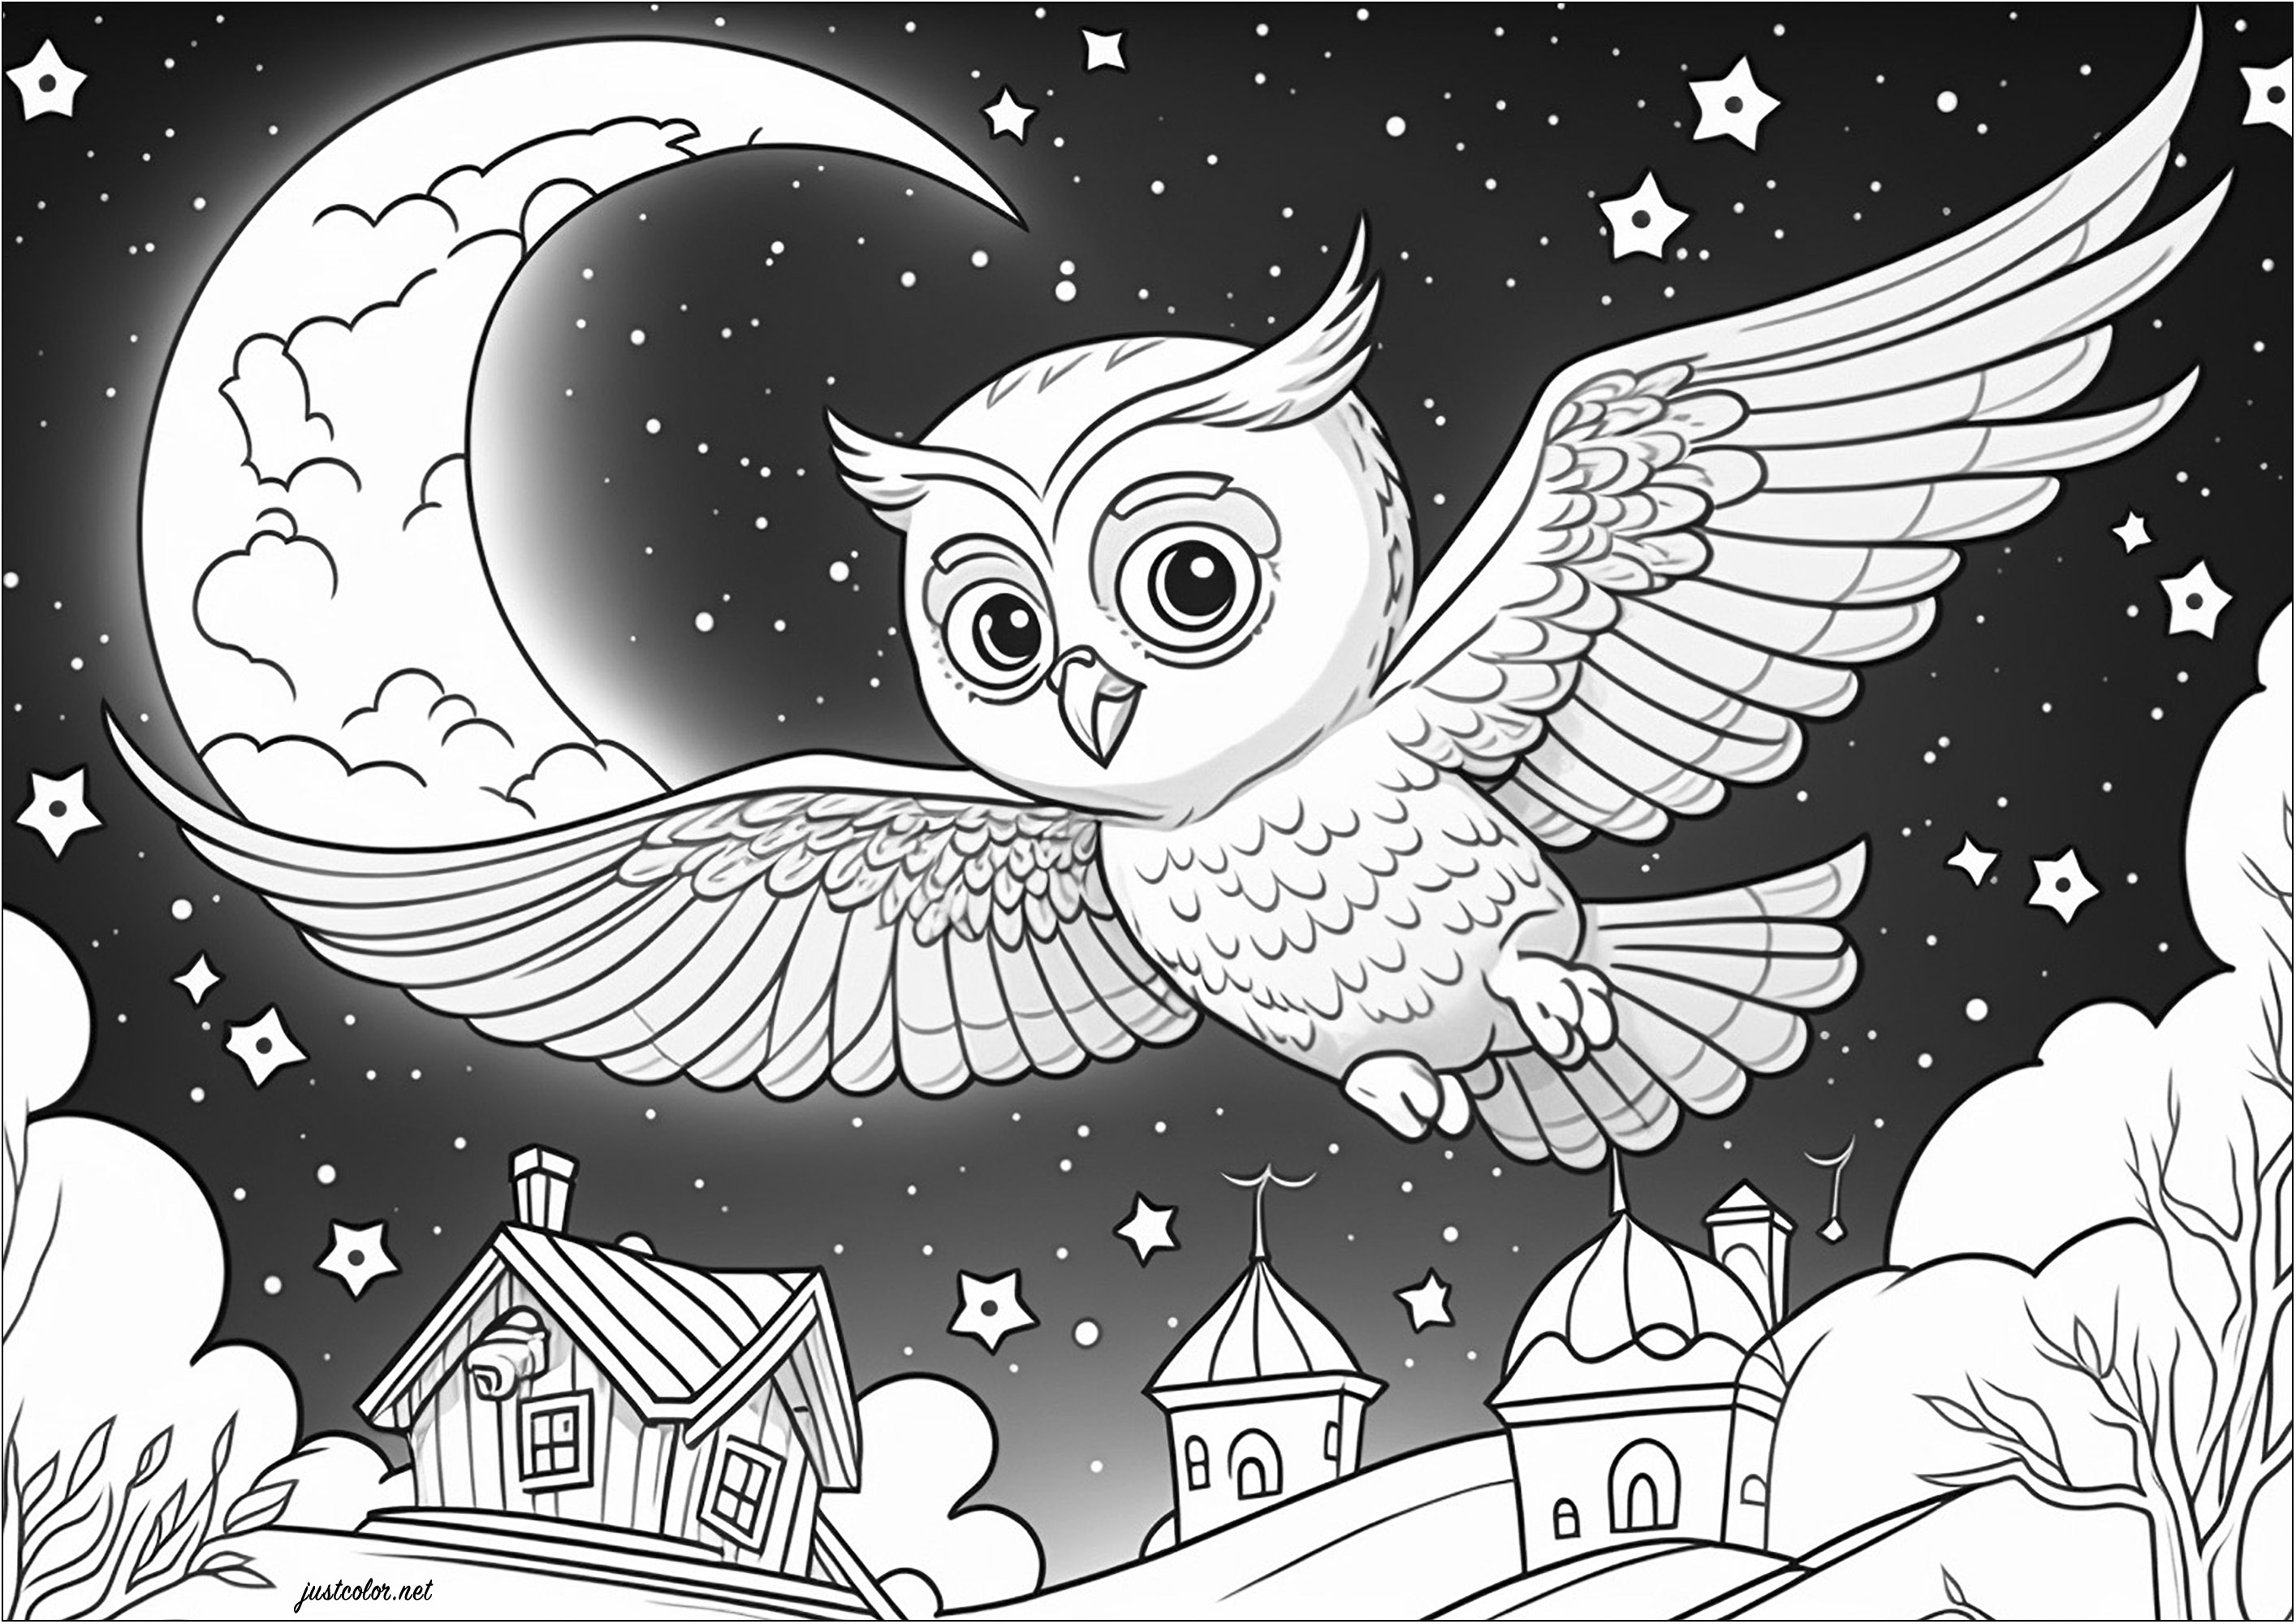 Dibujos para colorear de Búho y Pueblo Bonito. Esta página para colorear representa un búho solitario sobrevolando un bonito pueblo, bajo un cielo estrellado y una gran luna.